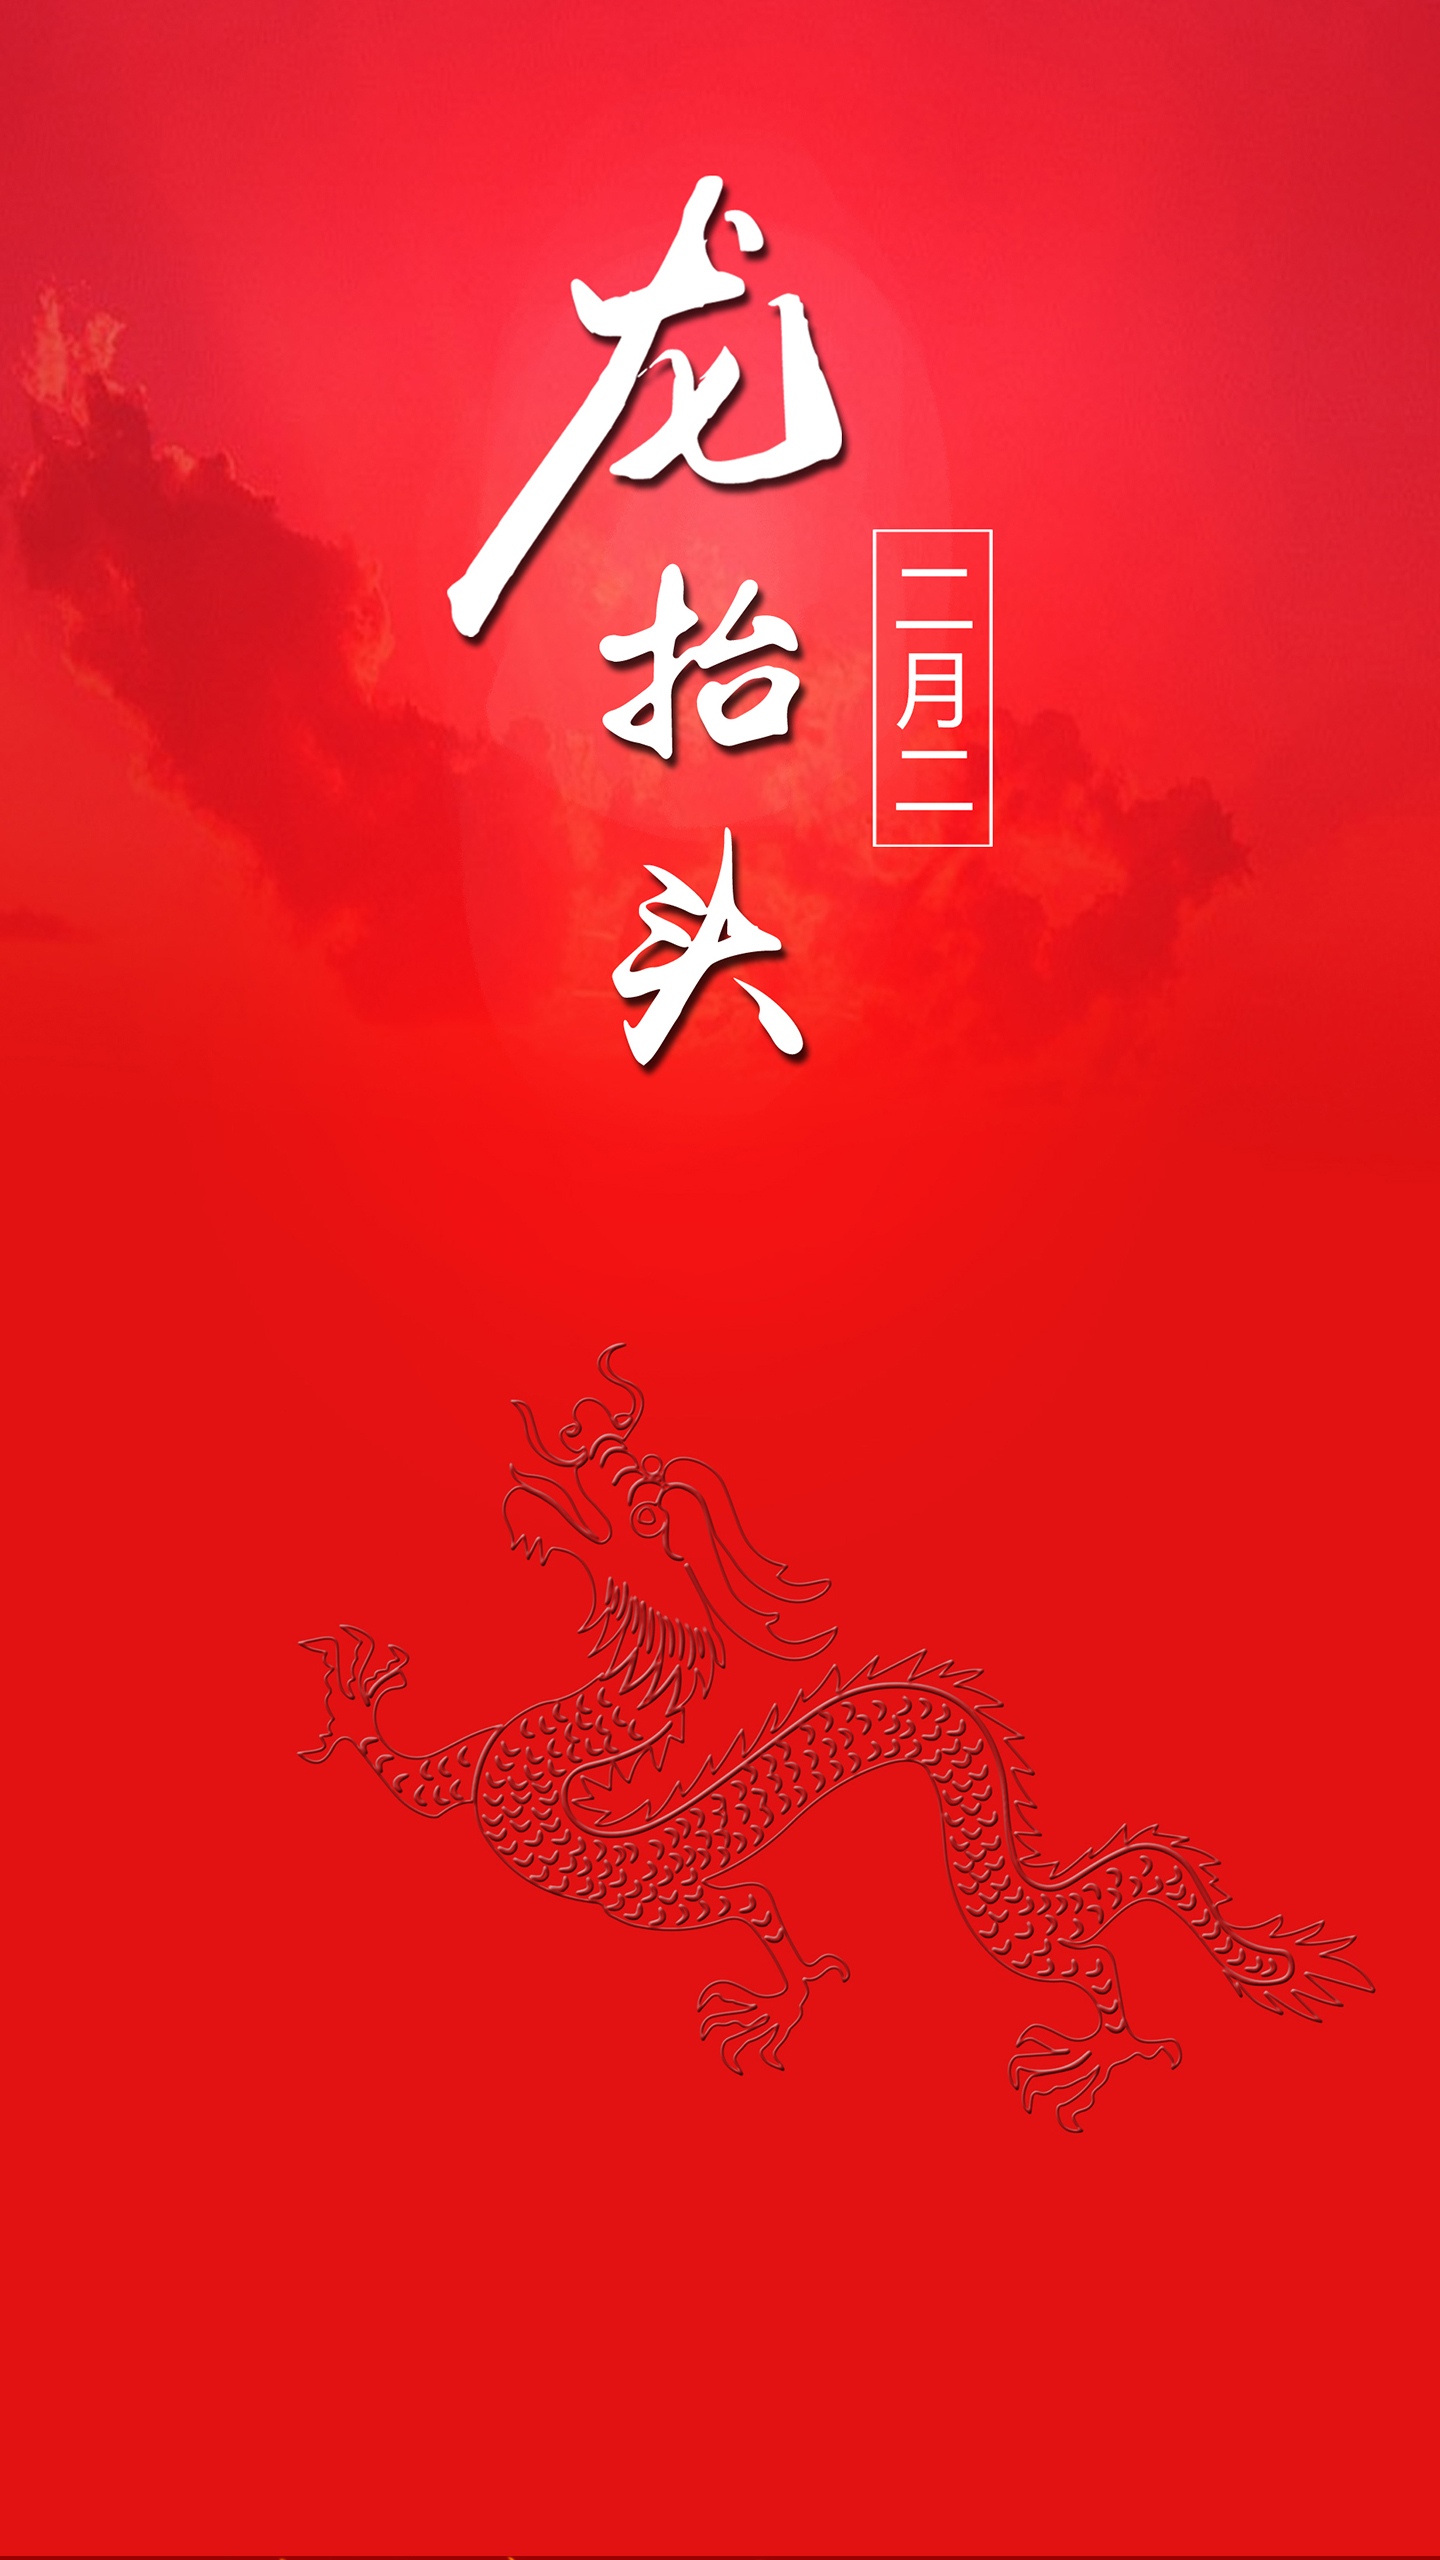 红色背景 二月二龙抬头文字手机壁纸图片 中国红